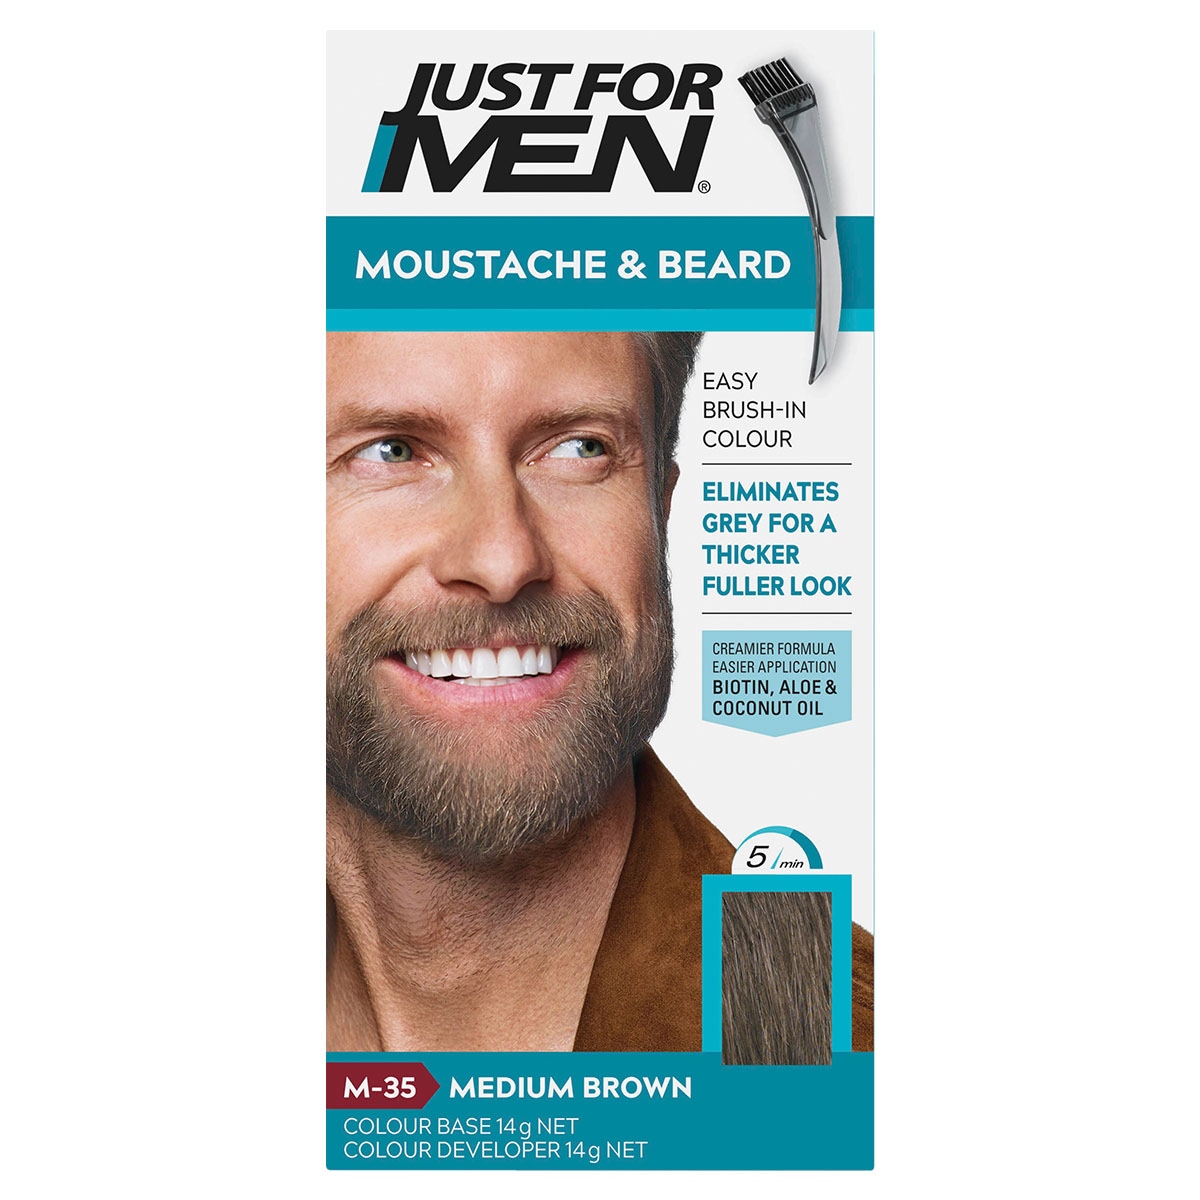 Just for Men Moustache & Beard Medium Brown